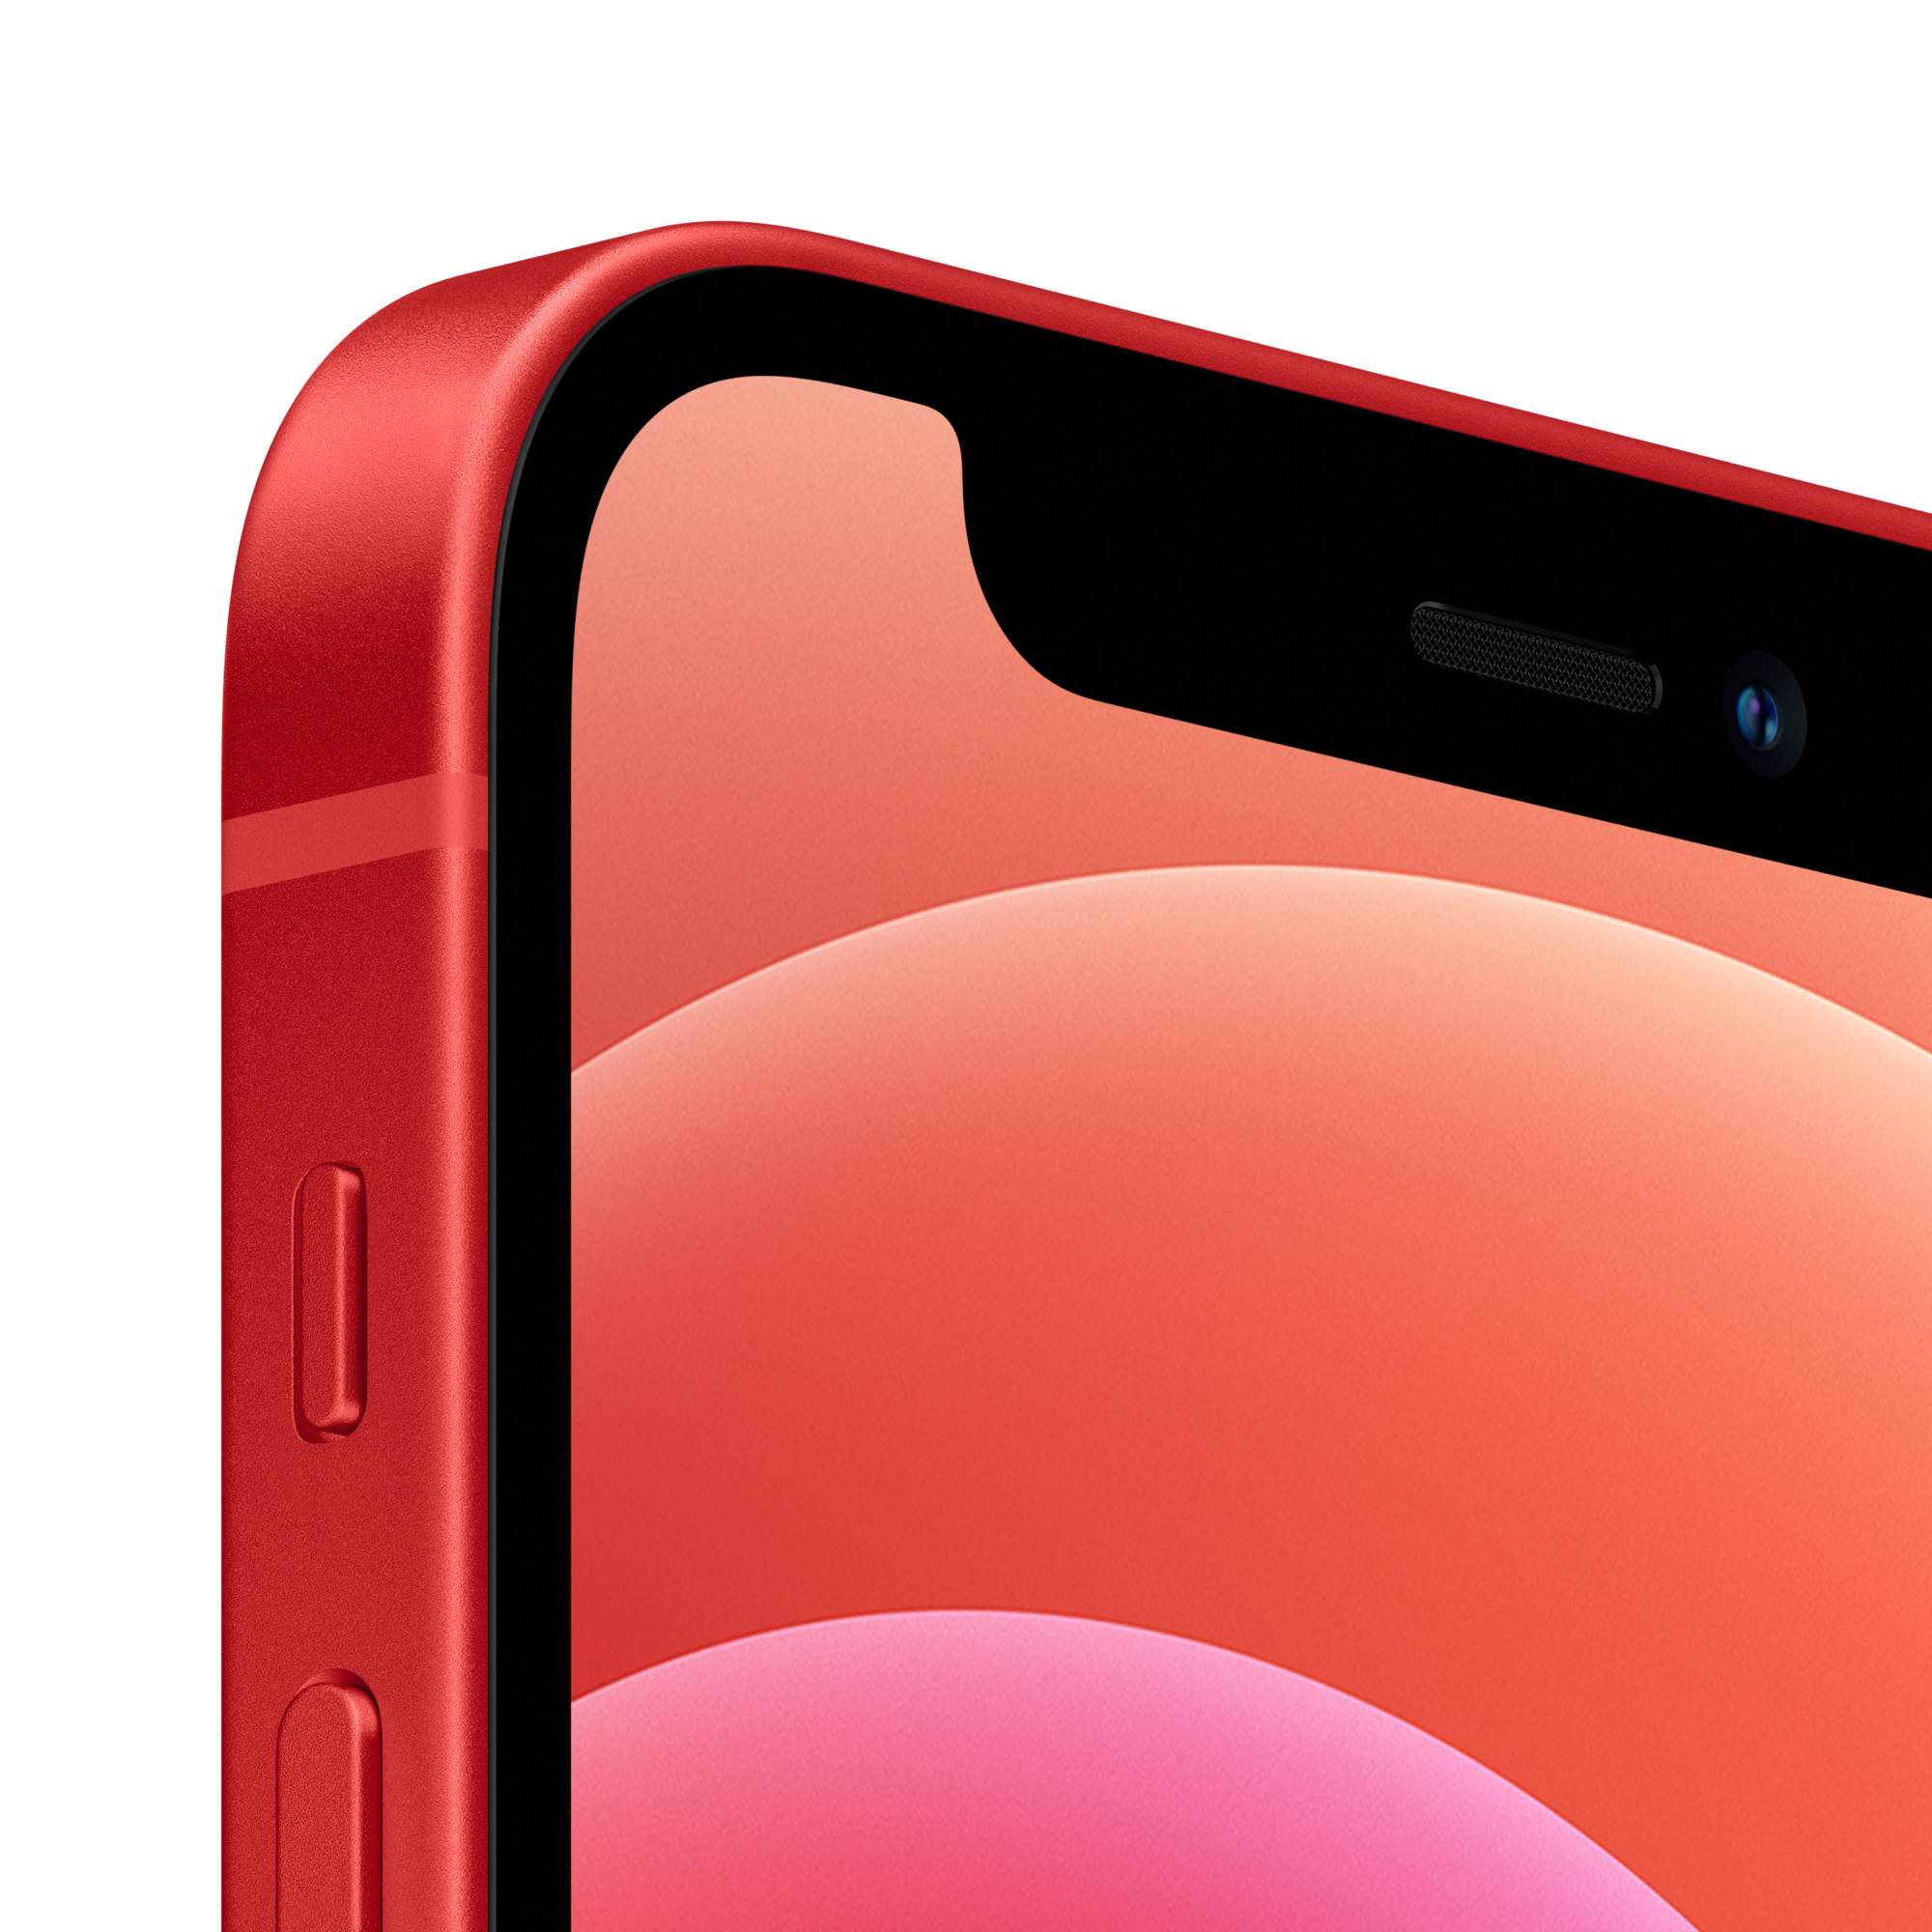 Смартфон Apple iPhone 12 mini 128GB (PRODUCT) RED, купить в Москве, цены в  интернет-магазинах на Мегамаркет